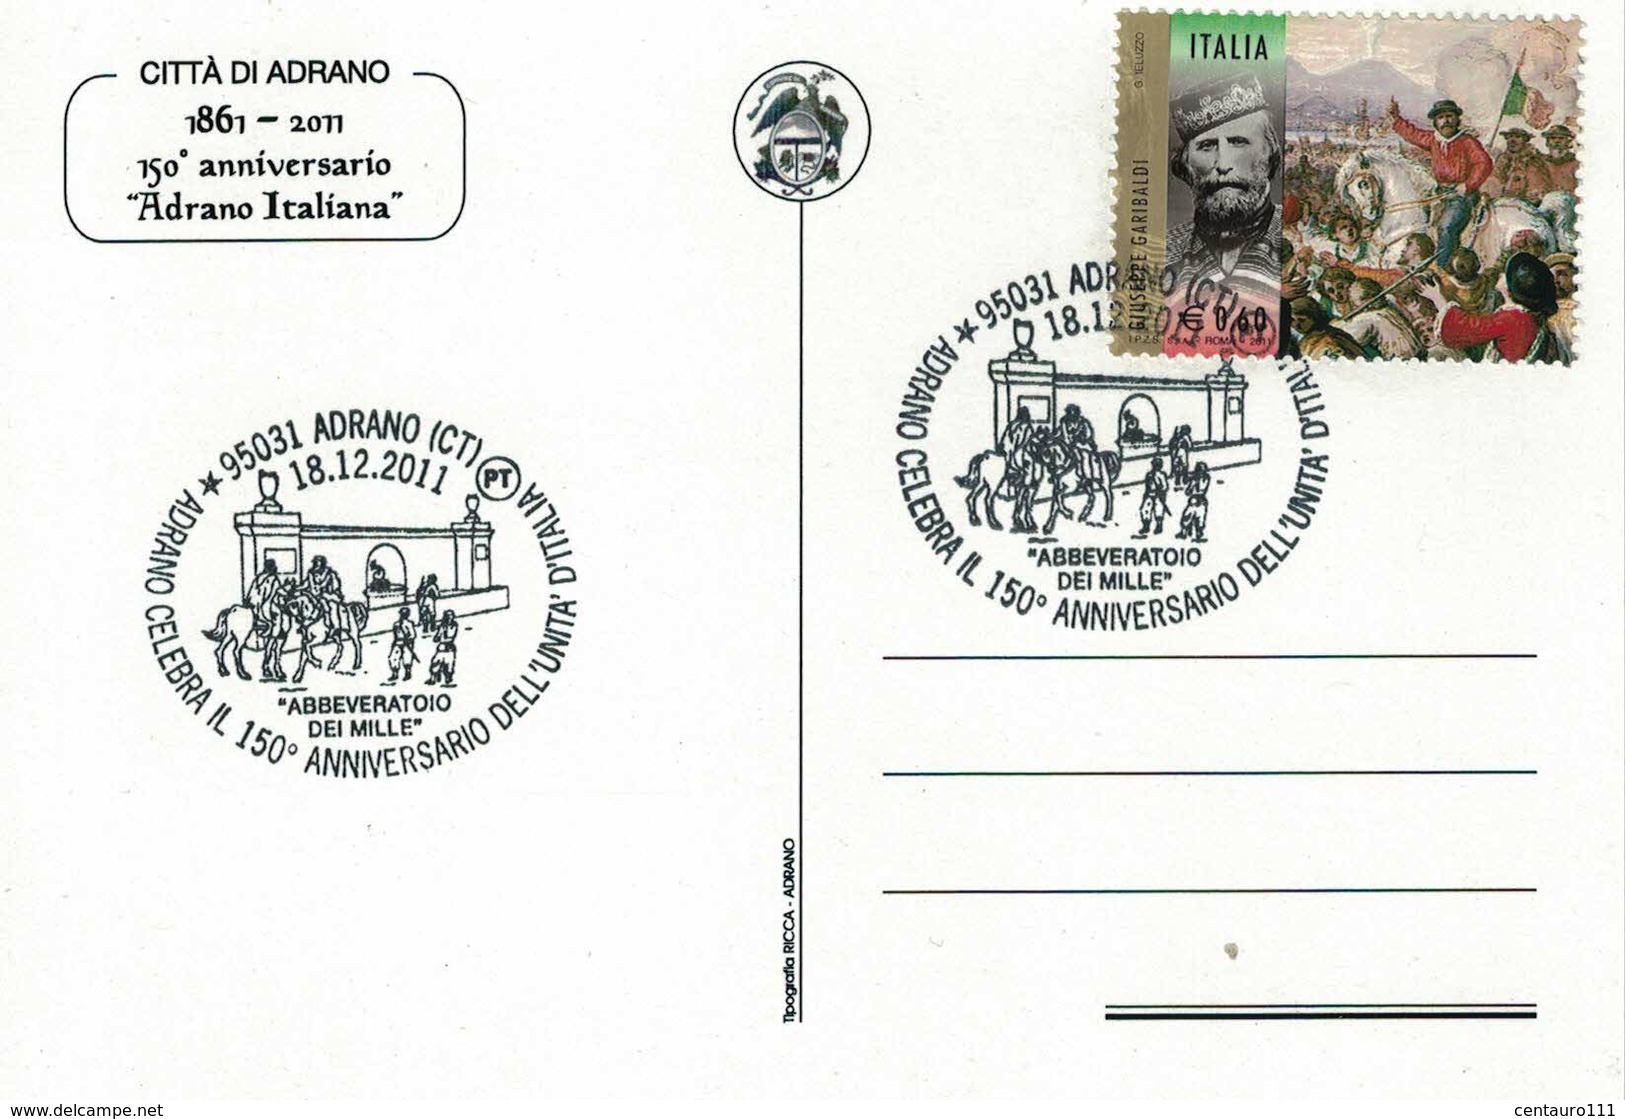 Adrano, Catania, Sicilia, 150 Anniversario Unità D'Italia, Annullo Postale, Marcofilia, Garibaldini - Catania